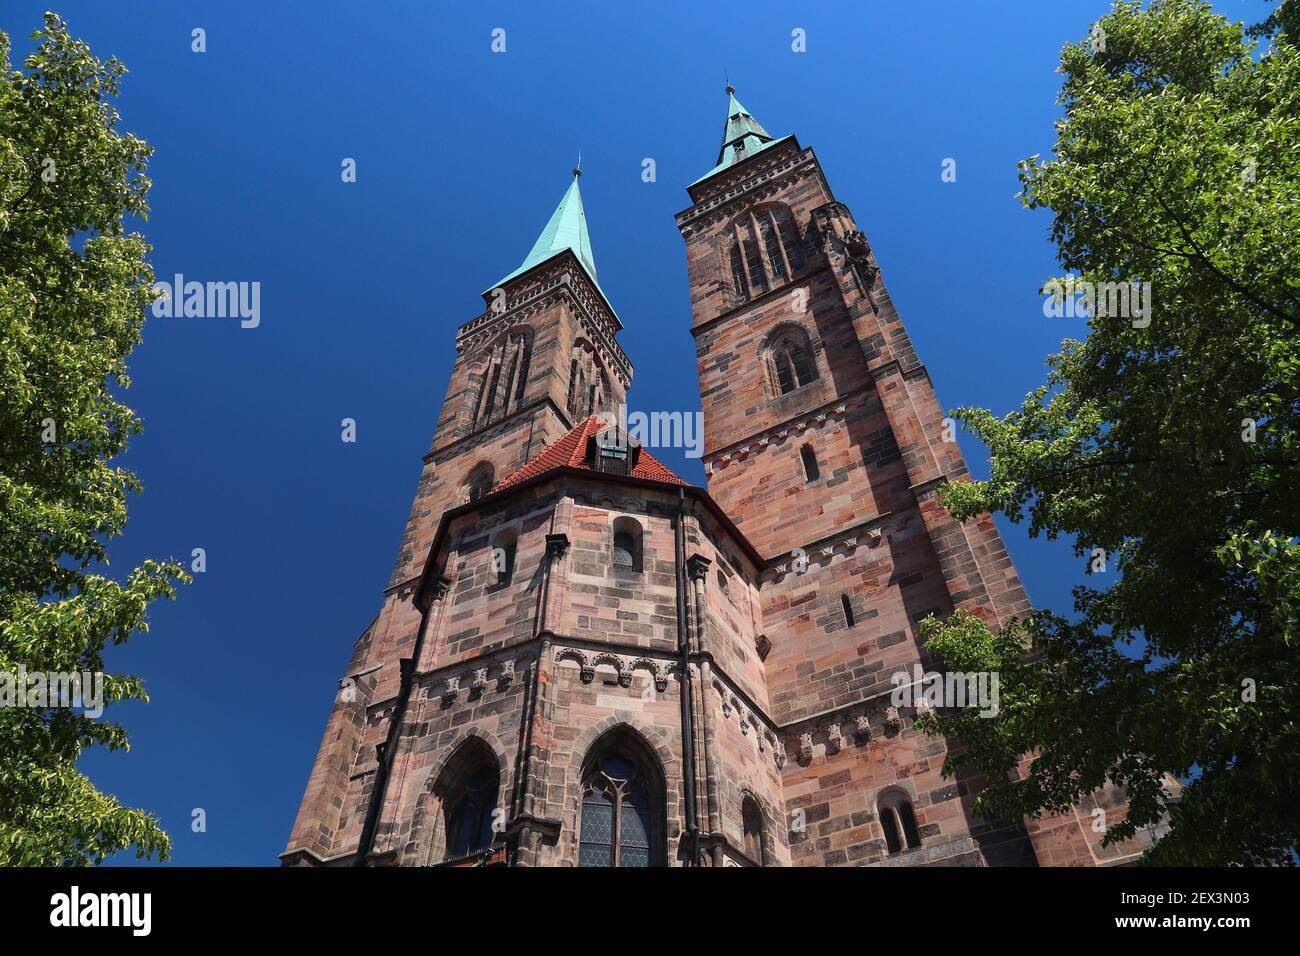 Monumenti storici della Germania - Norimberga chiesa di San Sebaldo. Architettura gotica in Germania. Europa medievale. Foto Stock